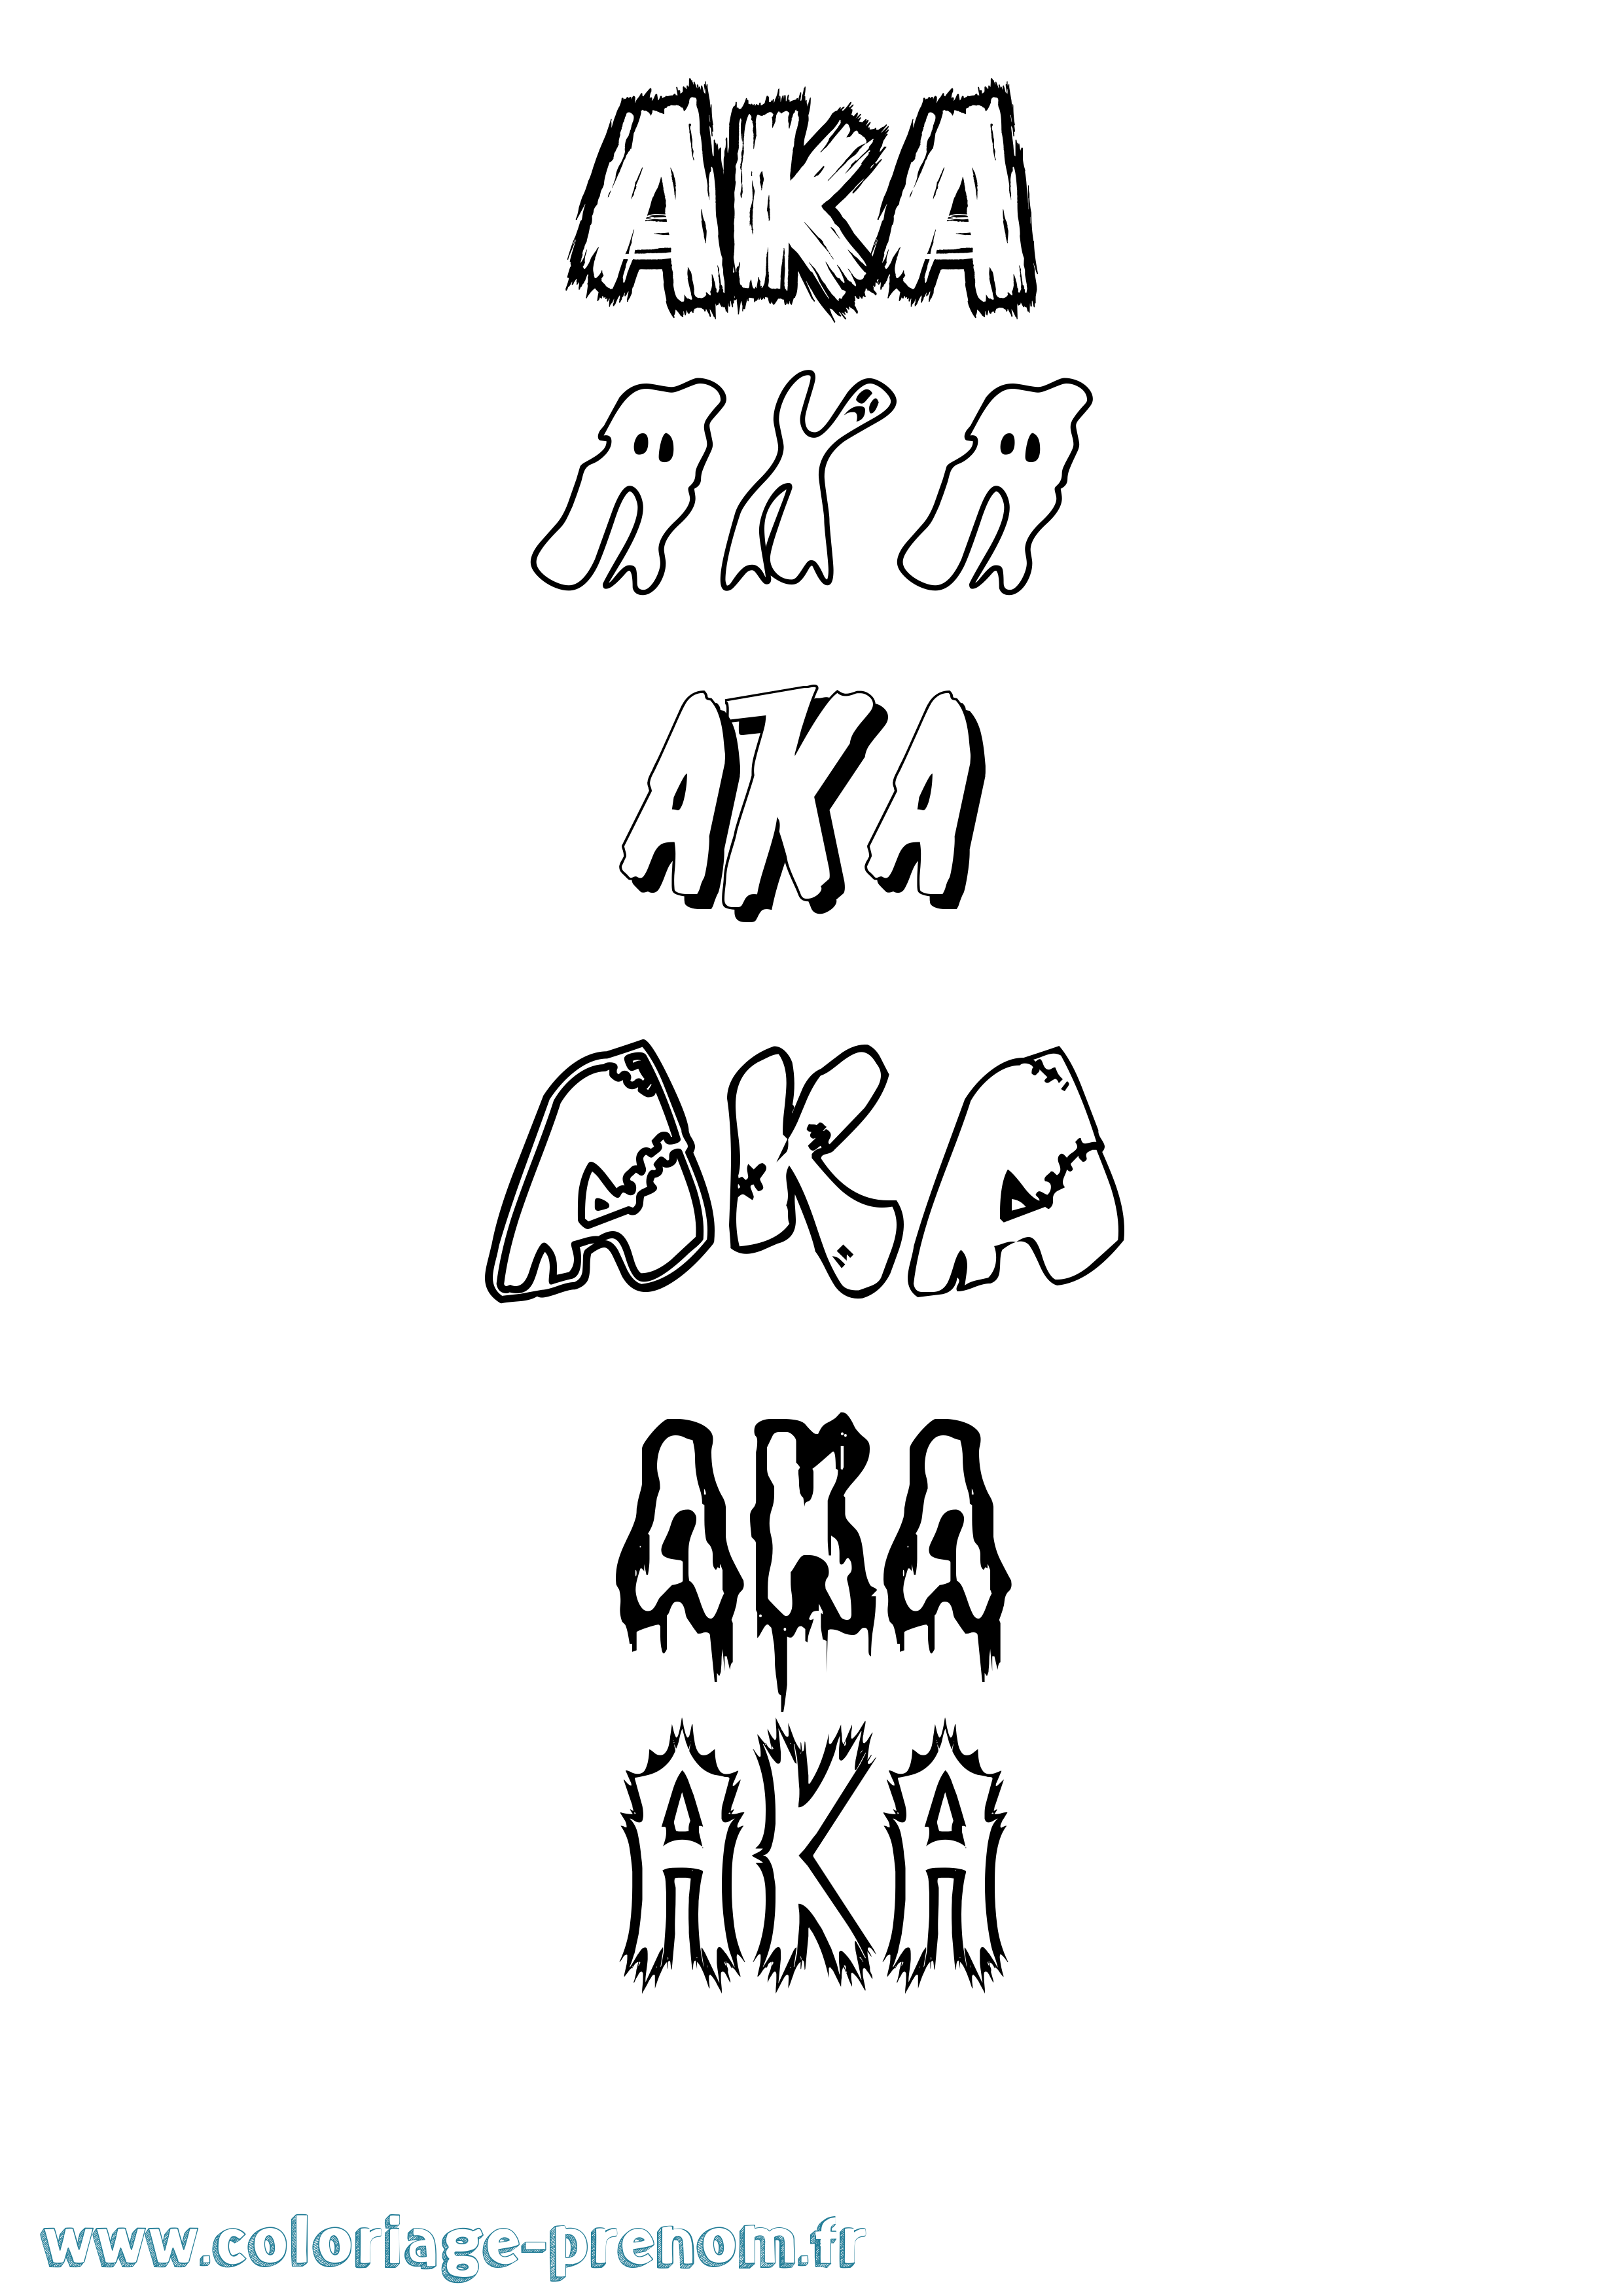 Coloriage prénom Aka Frisson